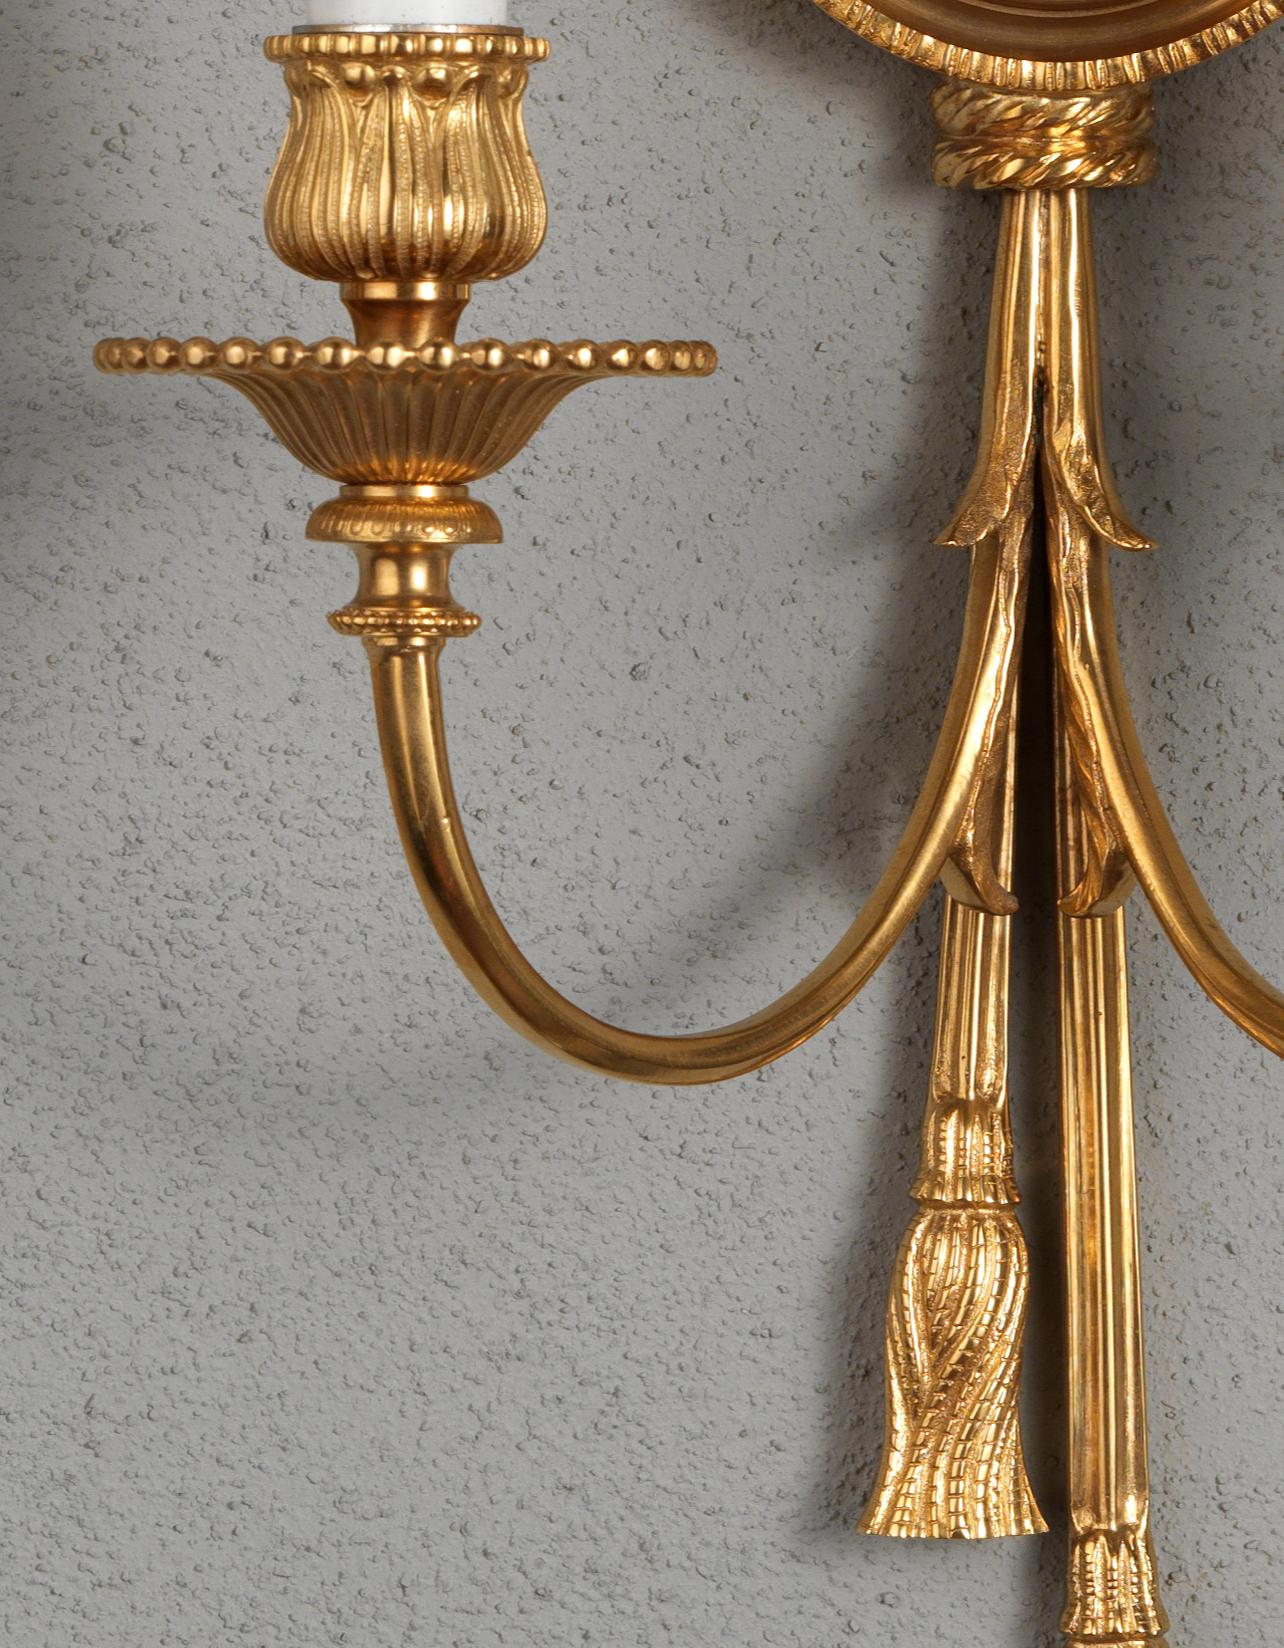 Ensemble d'appliques de style Louis XVI en bronze doré et émail par Gherardo Degli Albizzi. Ce bel ensemble d'appliques murales est entièrement réalisé en bronze doré et décoré d'éléments typiques de la période Louis XVI tels que la tête de Méduse